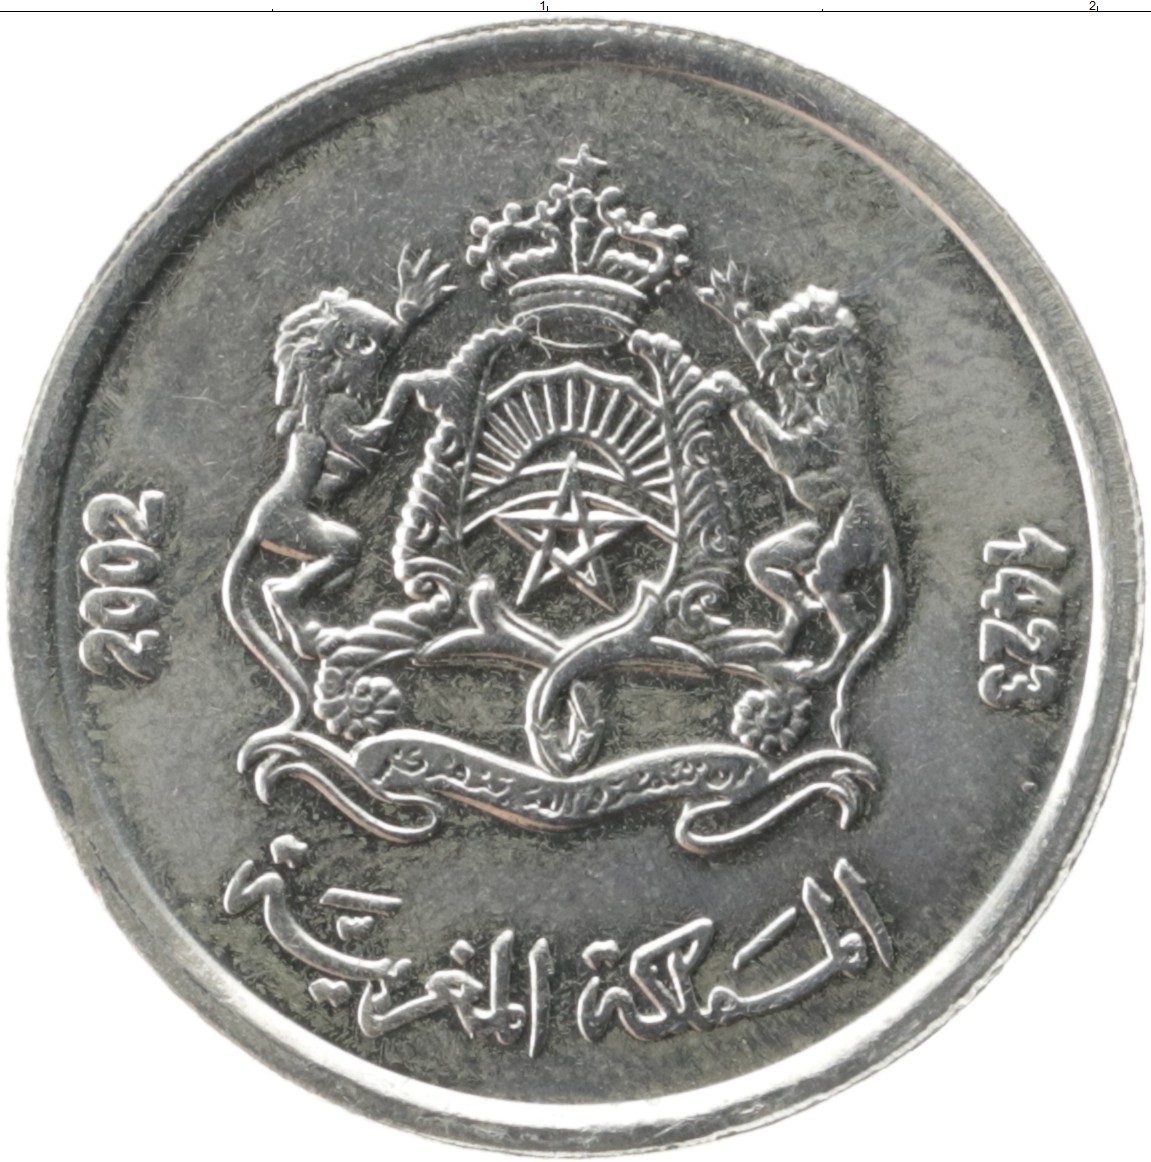 30000 дирхам. 1/2 Дирхама Марокко. 2 Дирхама монета. Монета Марокко 1/2 дирхама 2002. Три дирхама монета.